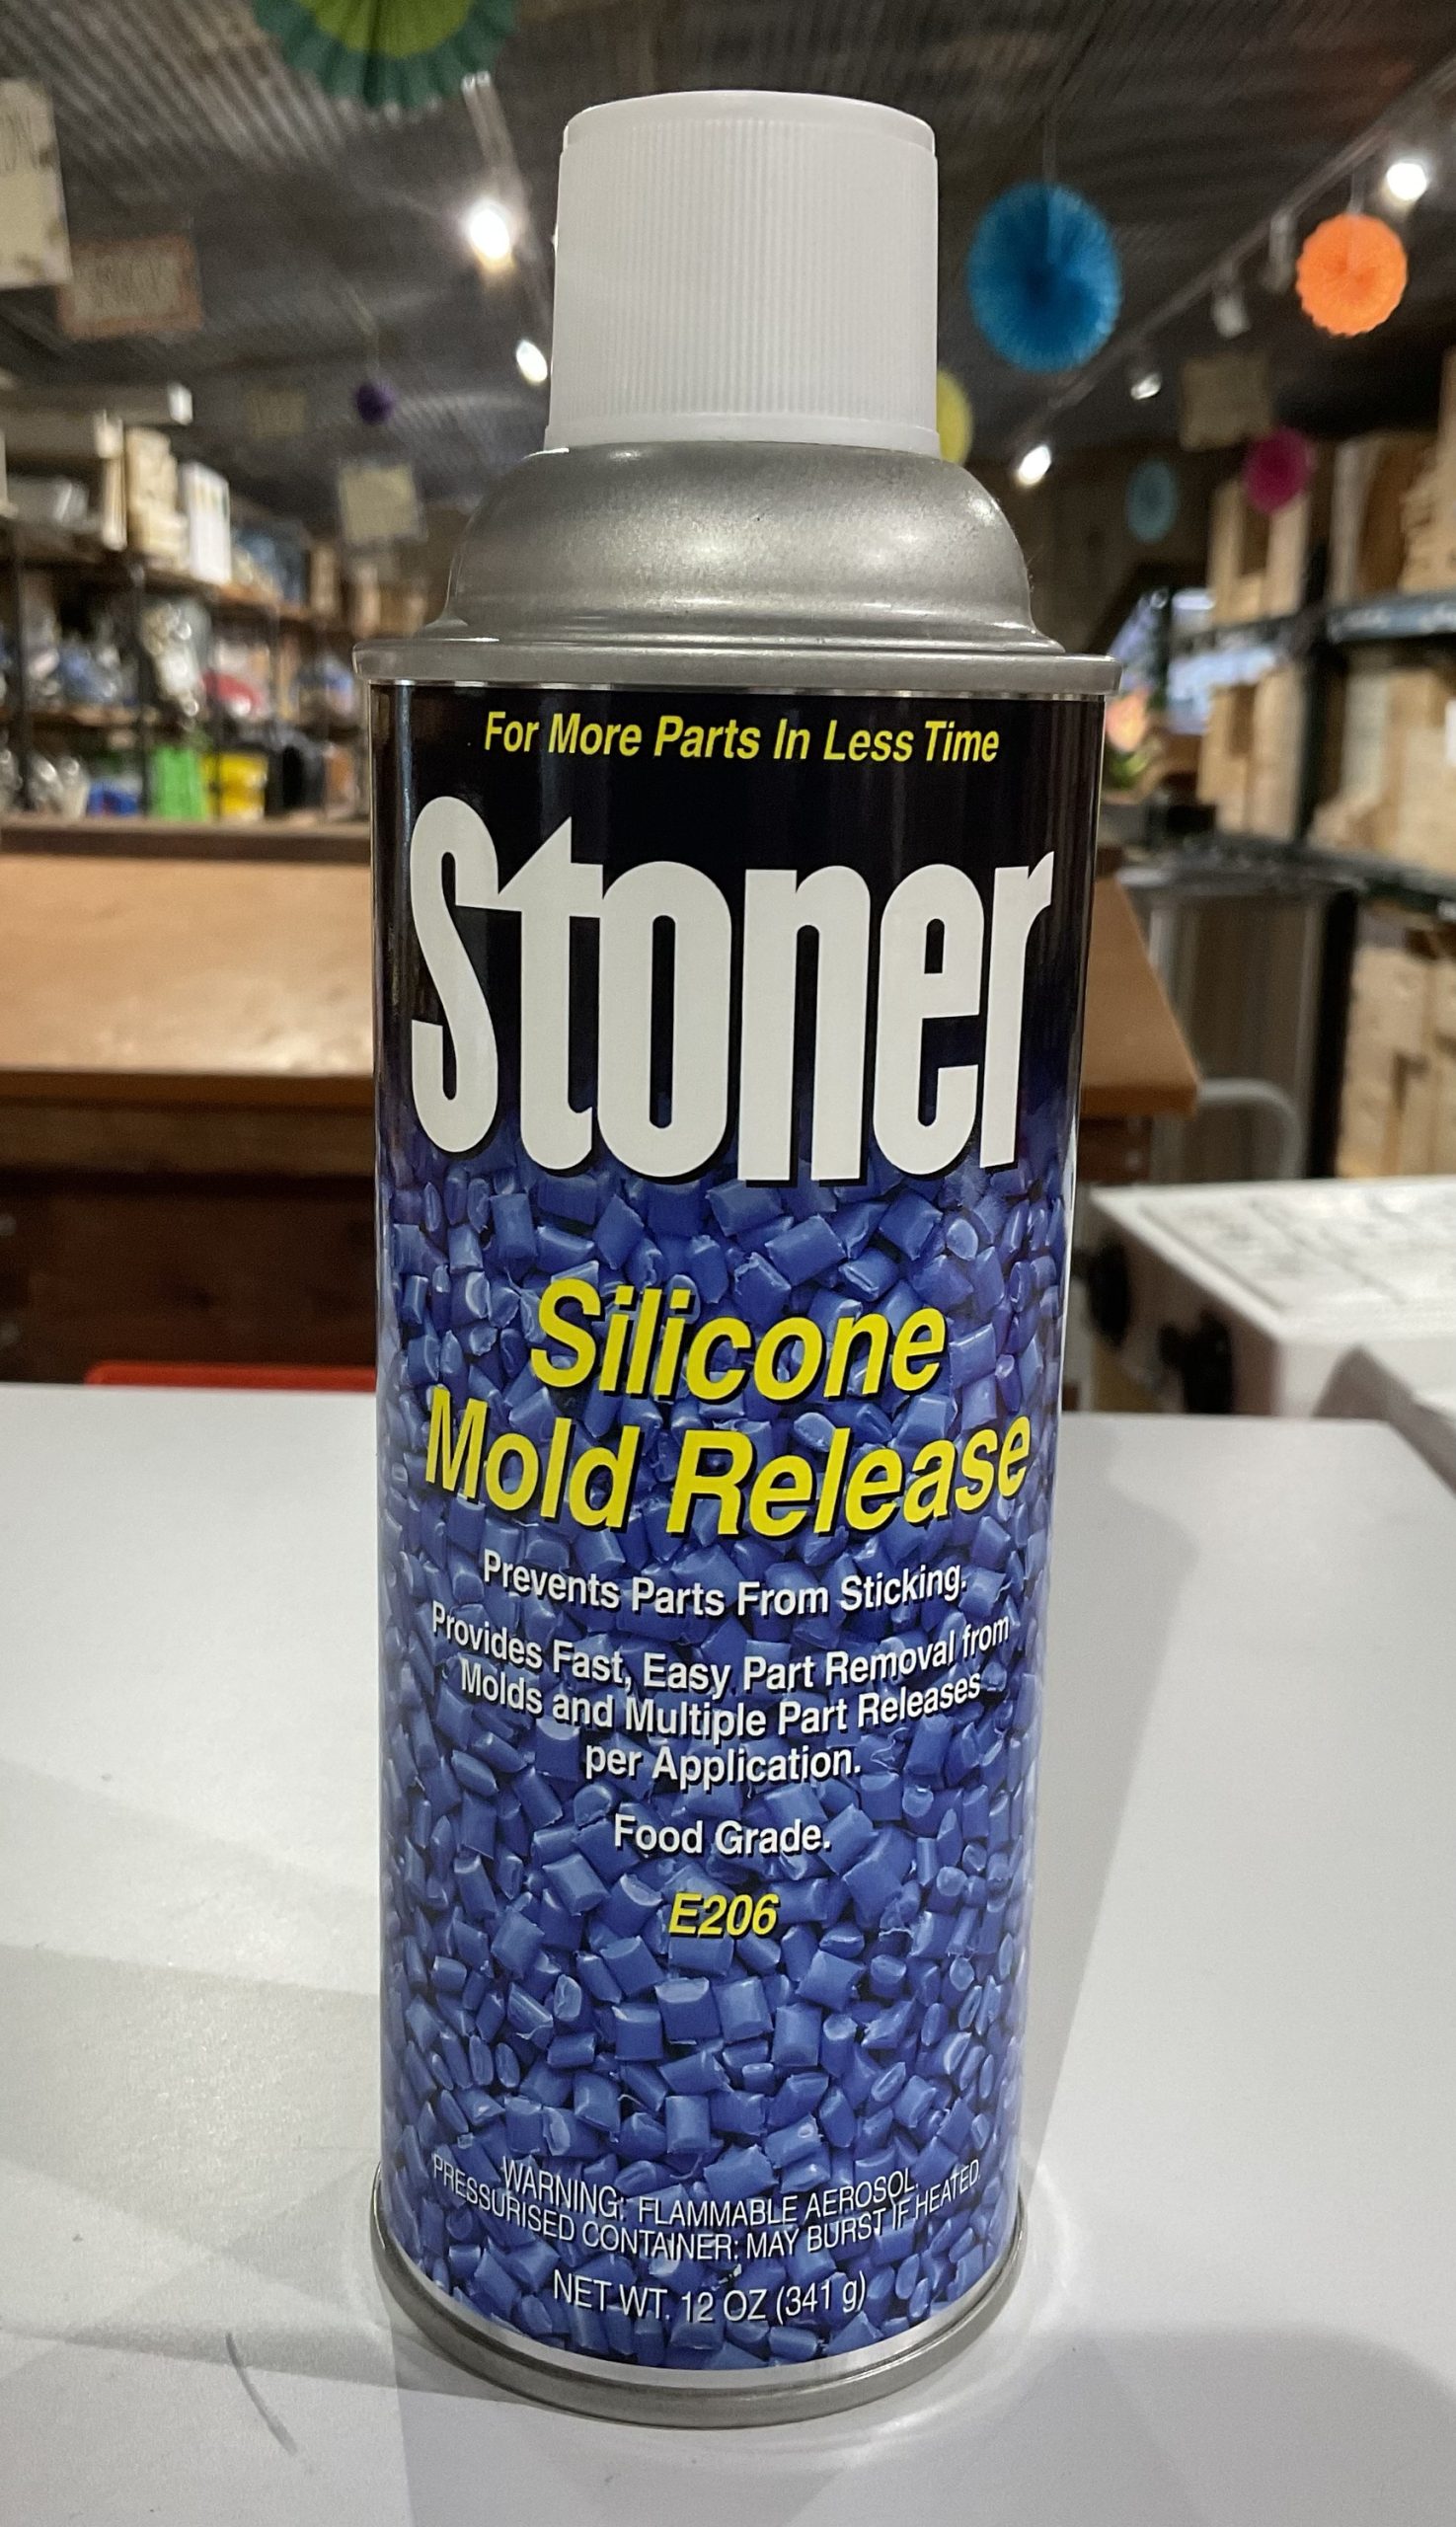 Silicone Mold Release,12 oz,Aerosol Stoner E206